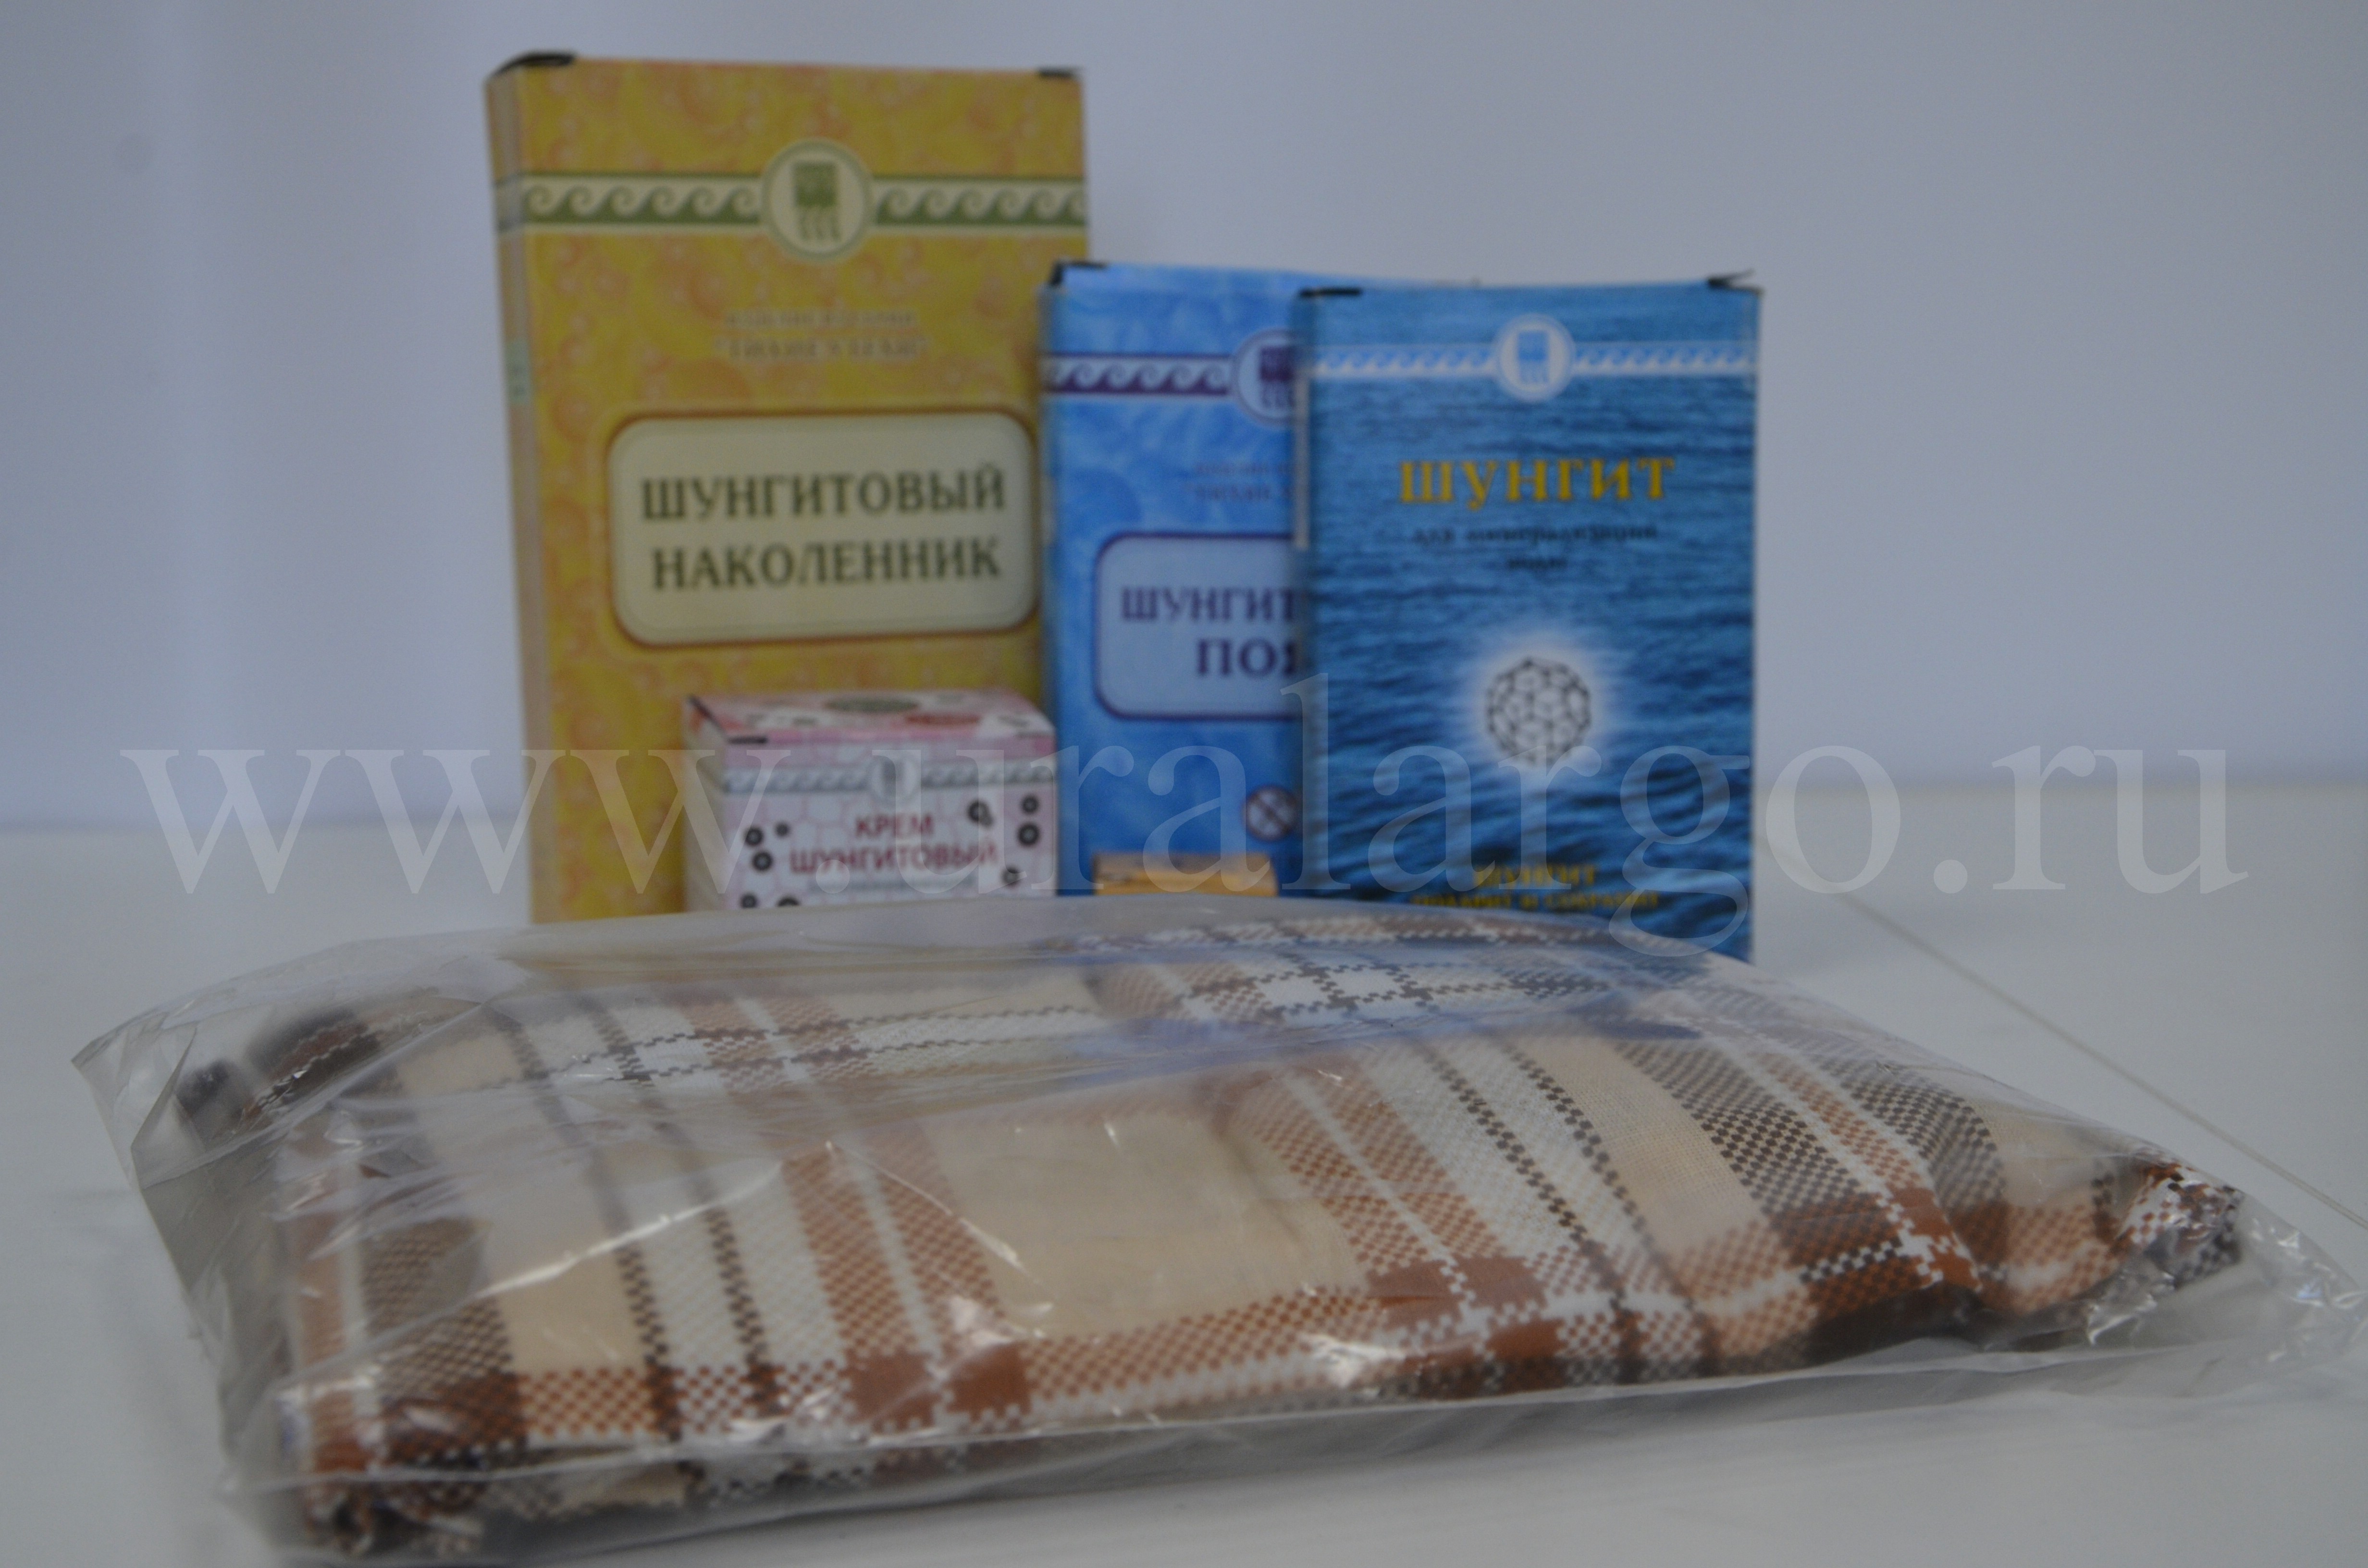 шунгитовый массажный коврик купить арго Екатеринбург